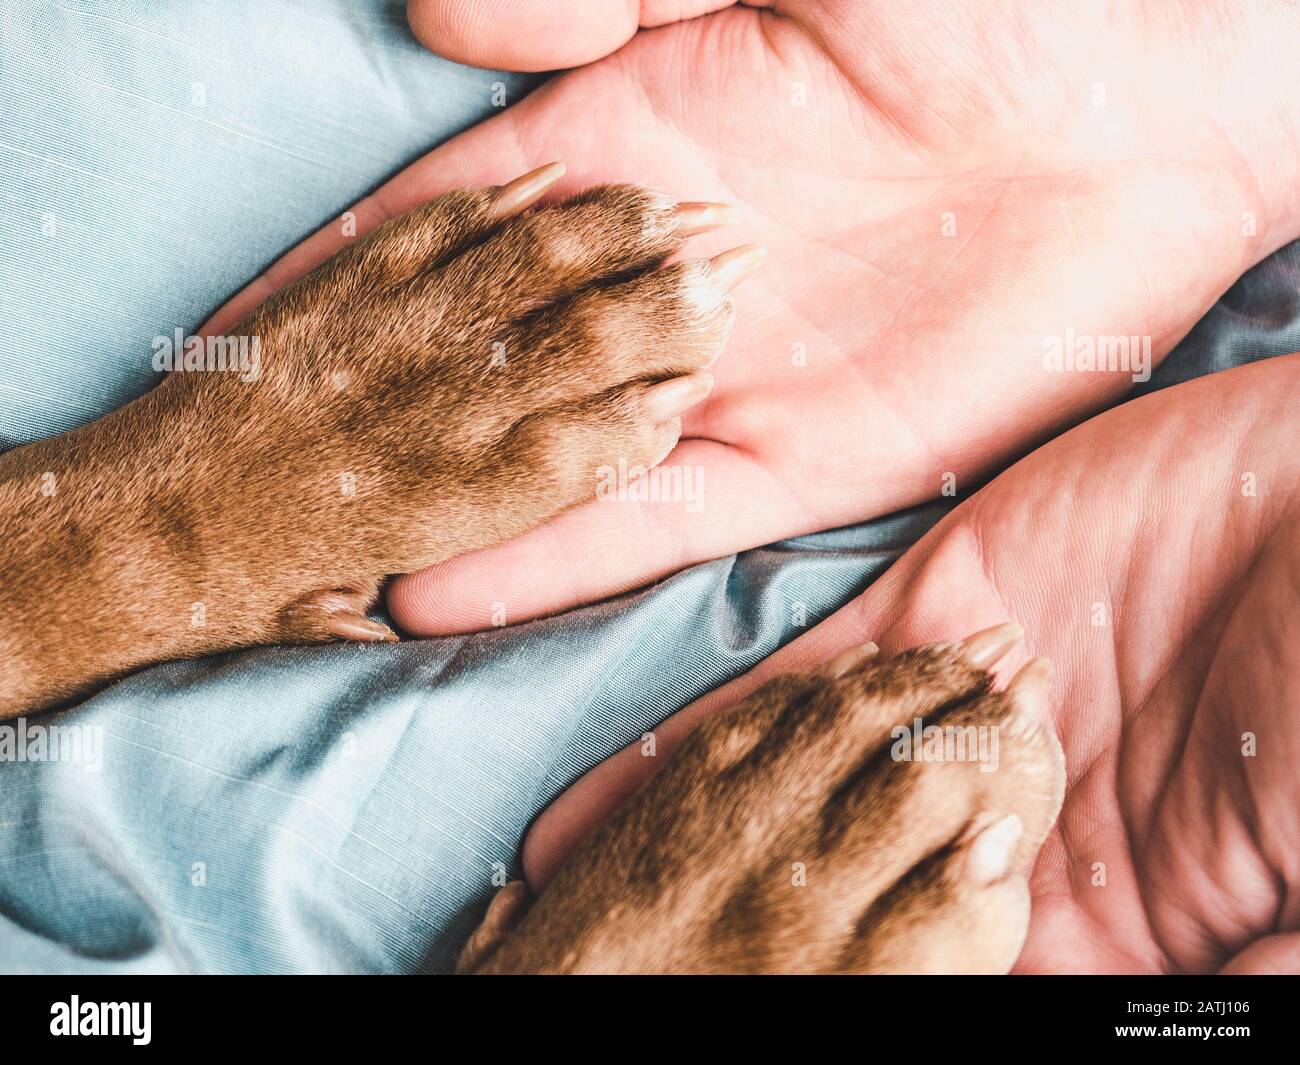 Юные лапки. Рука и лапа. Золотистый ретривер лапы. Лапа животного и рука человека. Лапа кота и руки человека команда.